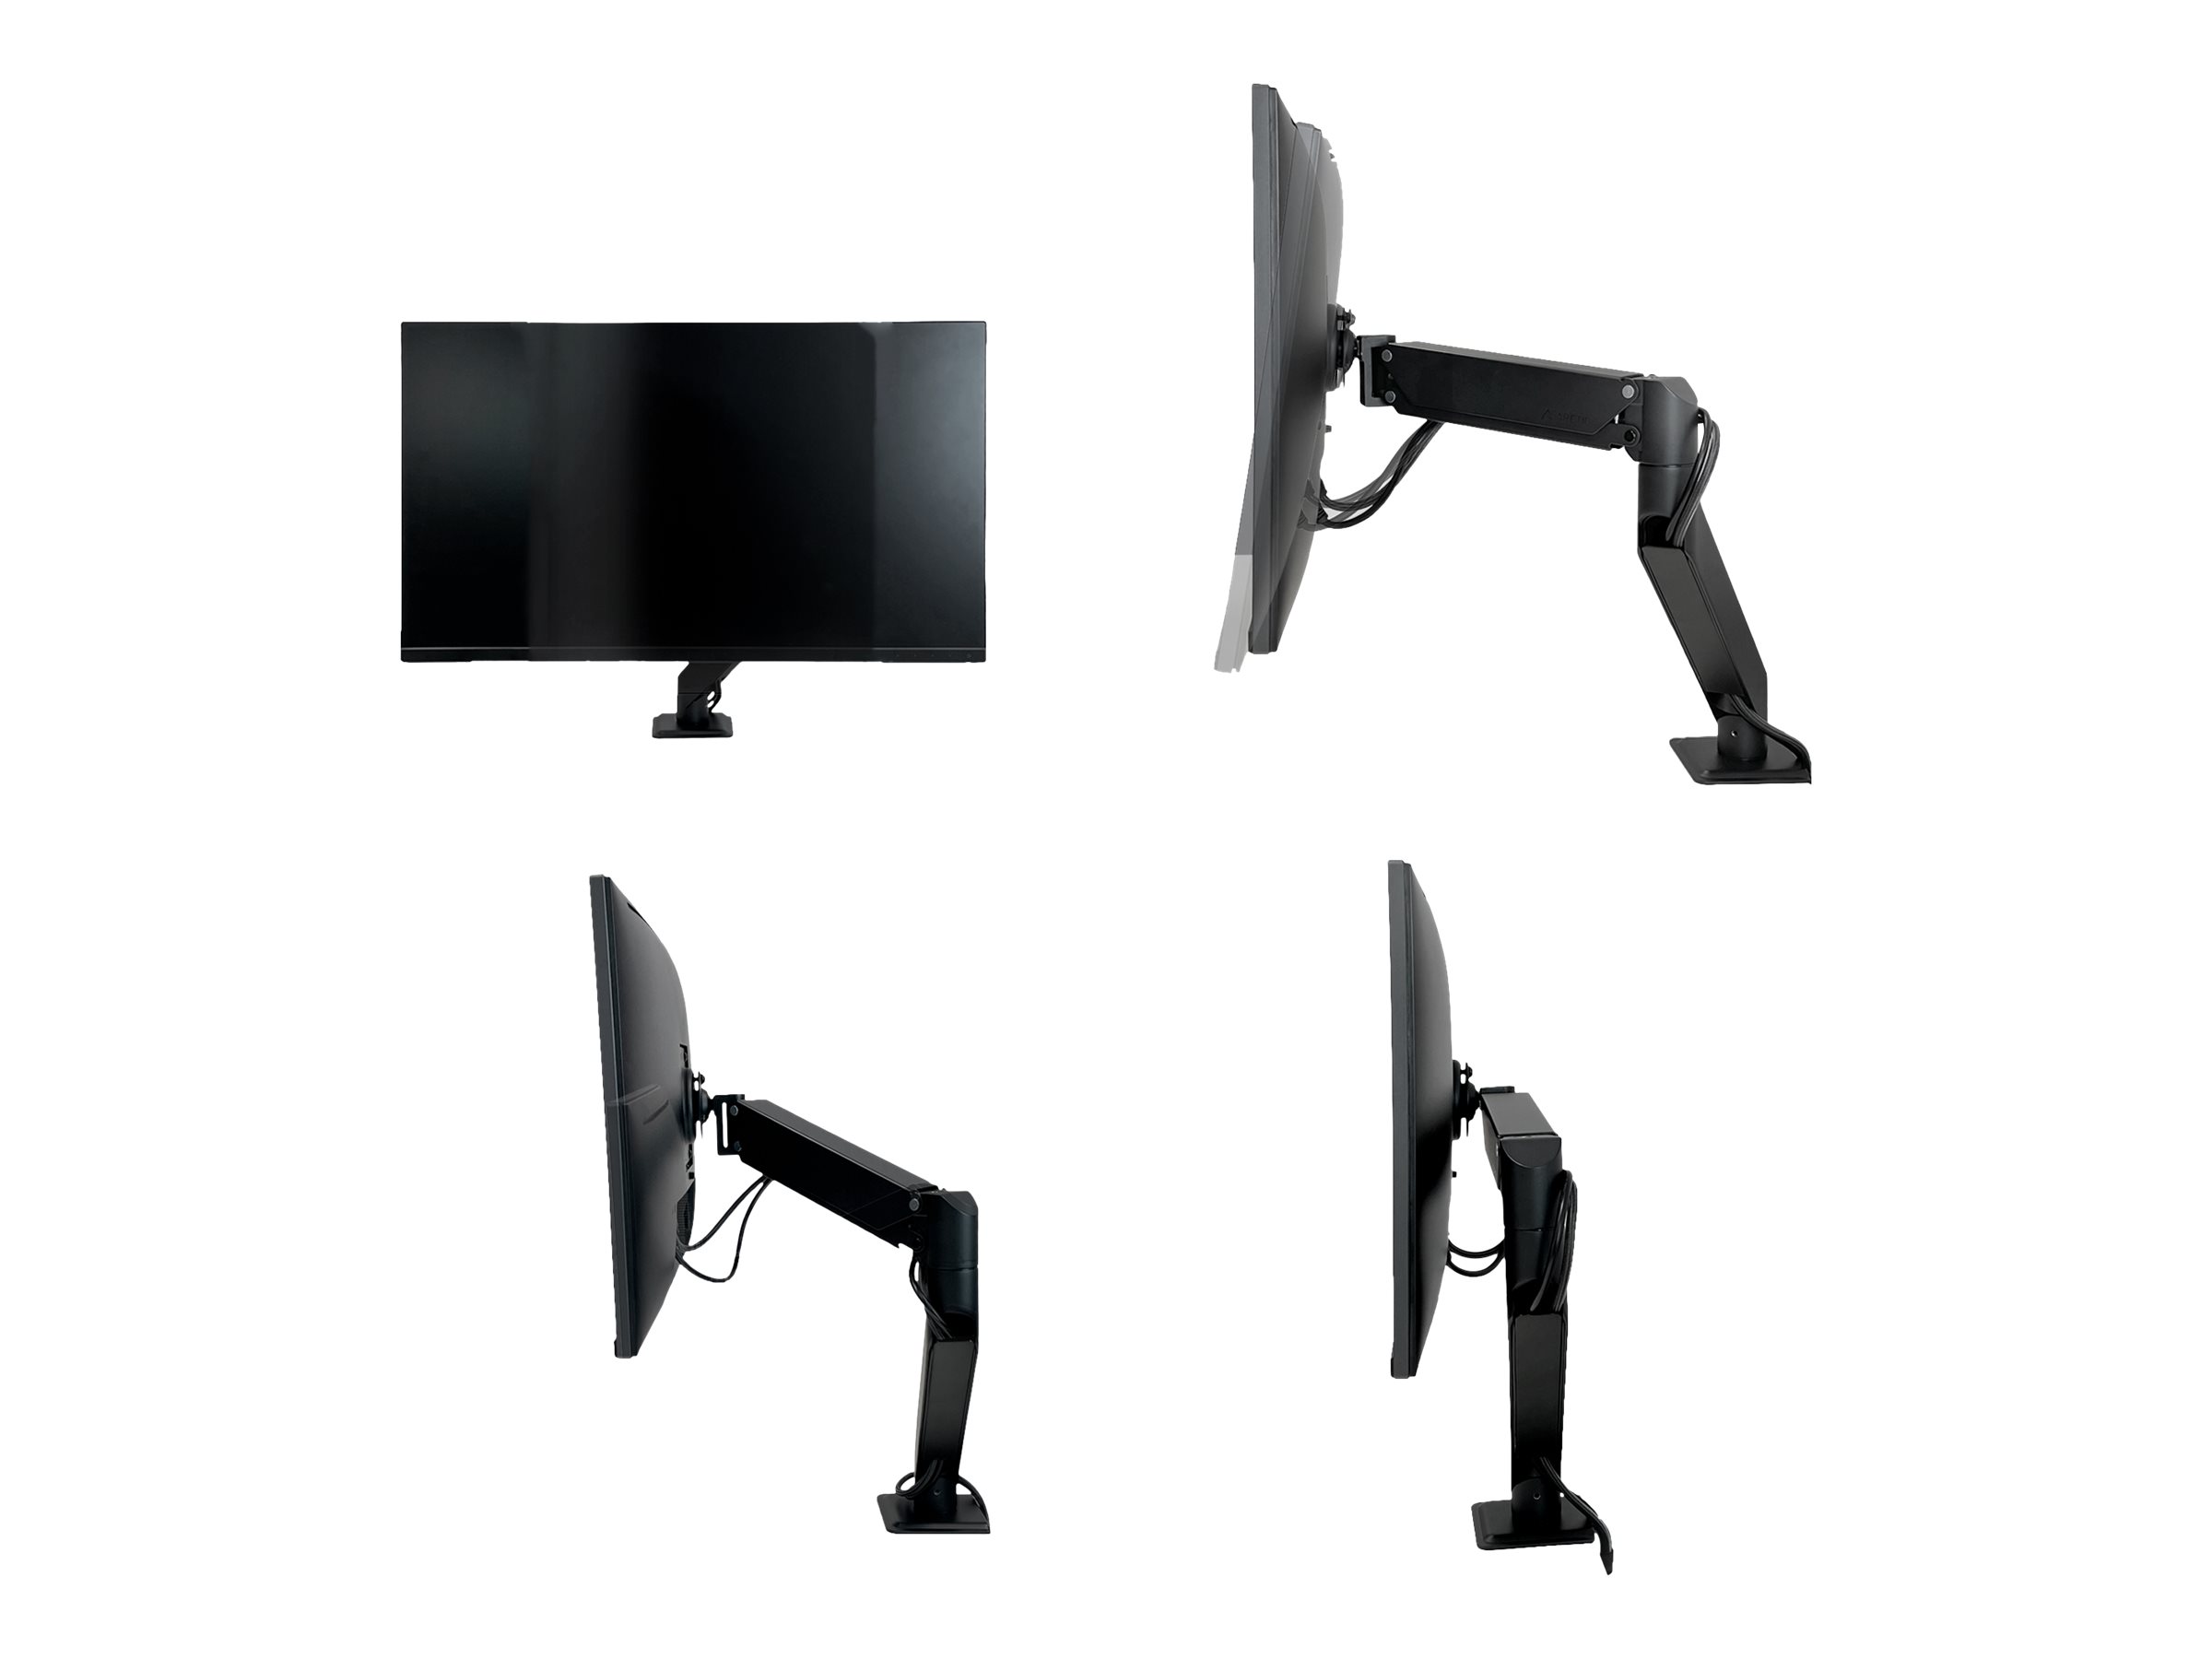 Arctic X1-3D - Befestigungskit (Gelenkarm) - full-motion - für Monitor - Stahl, Zinklegierung, Aluminiumlegierung - mattschwarz - Bildschirmgröße: up to 101.6 cm (wide)